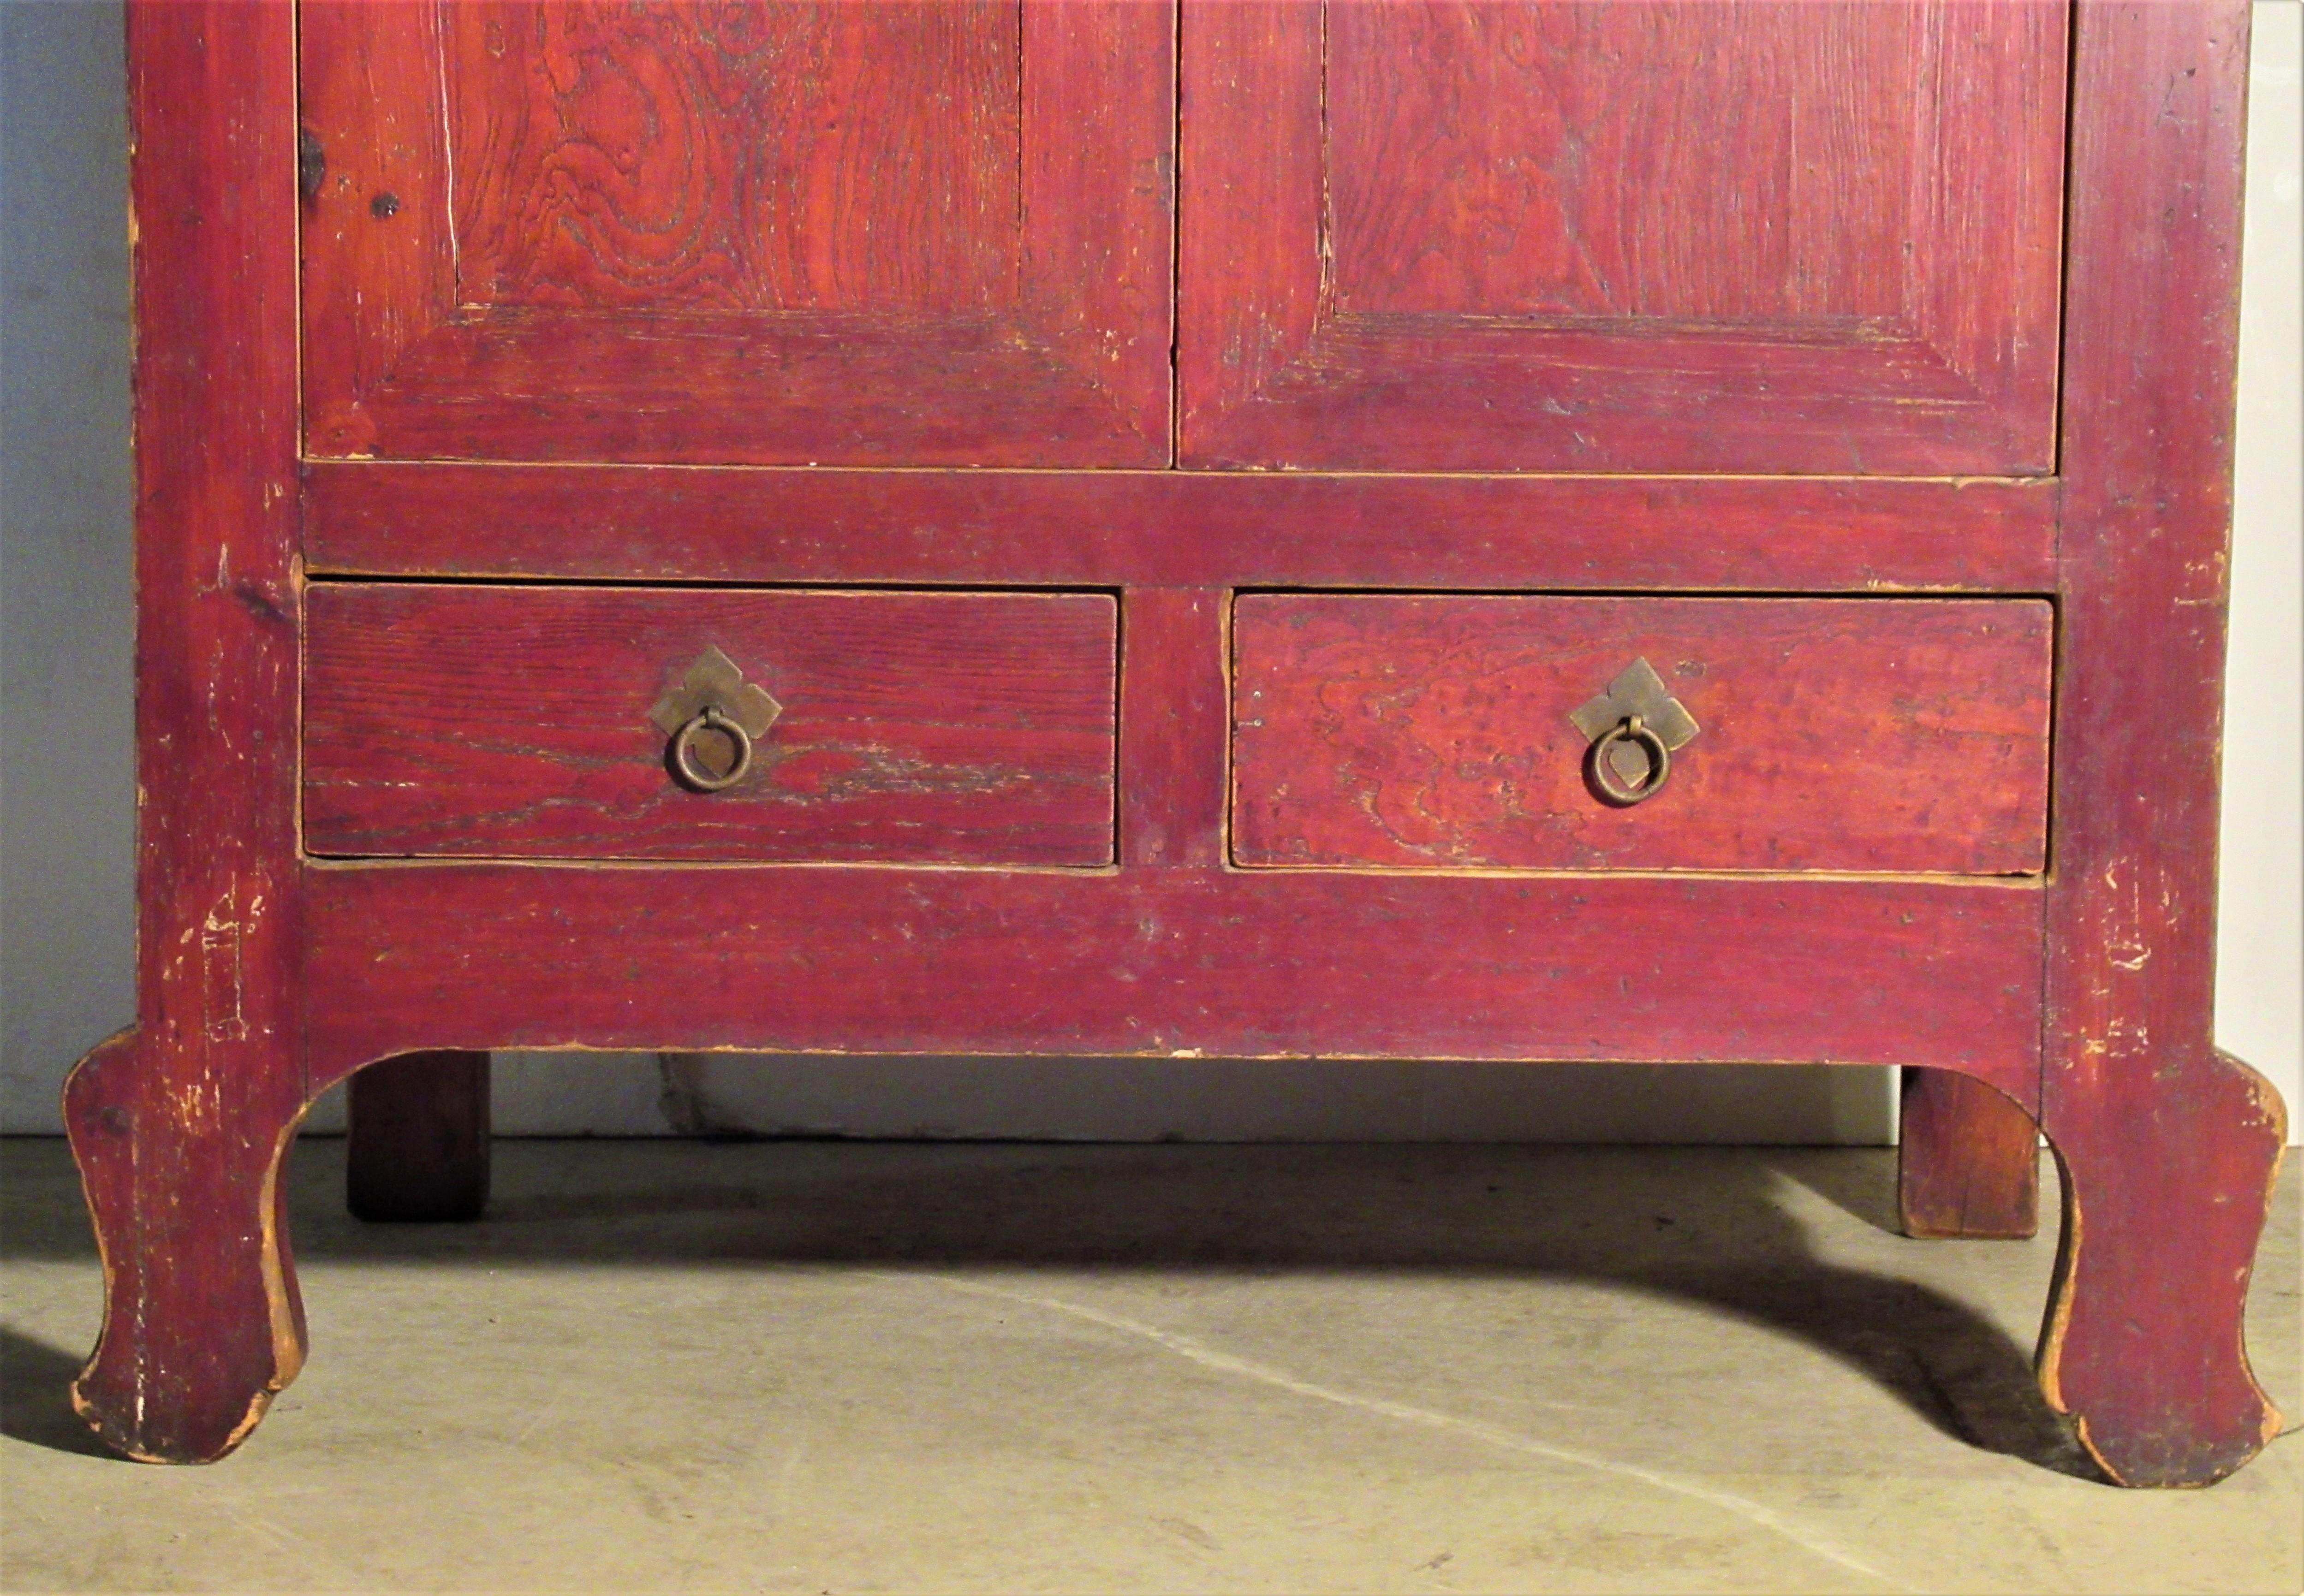 Ancienne armoire de mariage chinoise en finition teintée rouge sienne brûlée d'origine qui complète joliment le grain du bois. Deux portes sur deux tiroirs / quincaillerie en laiton / décoration peinte à l'encre d'une plante de bambou sur les deux